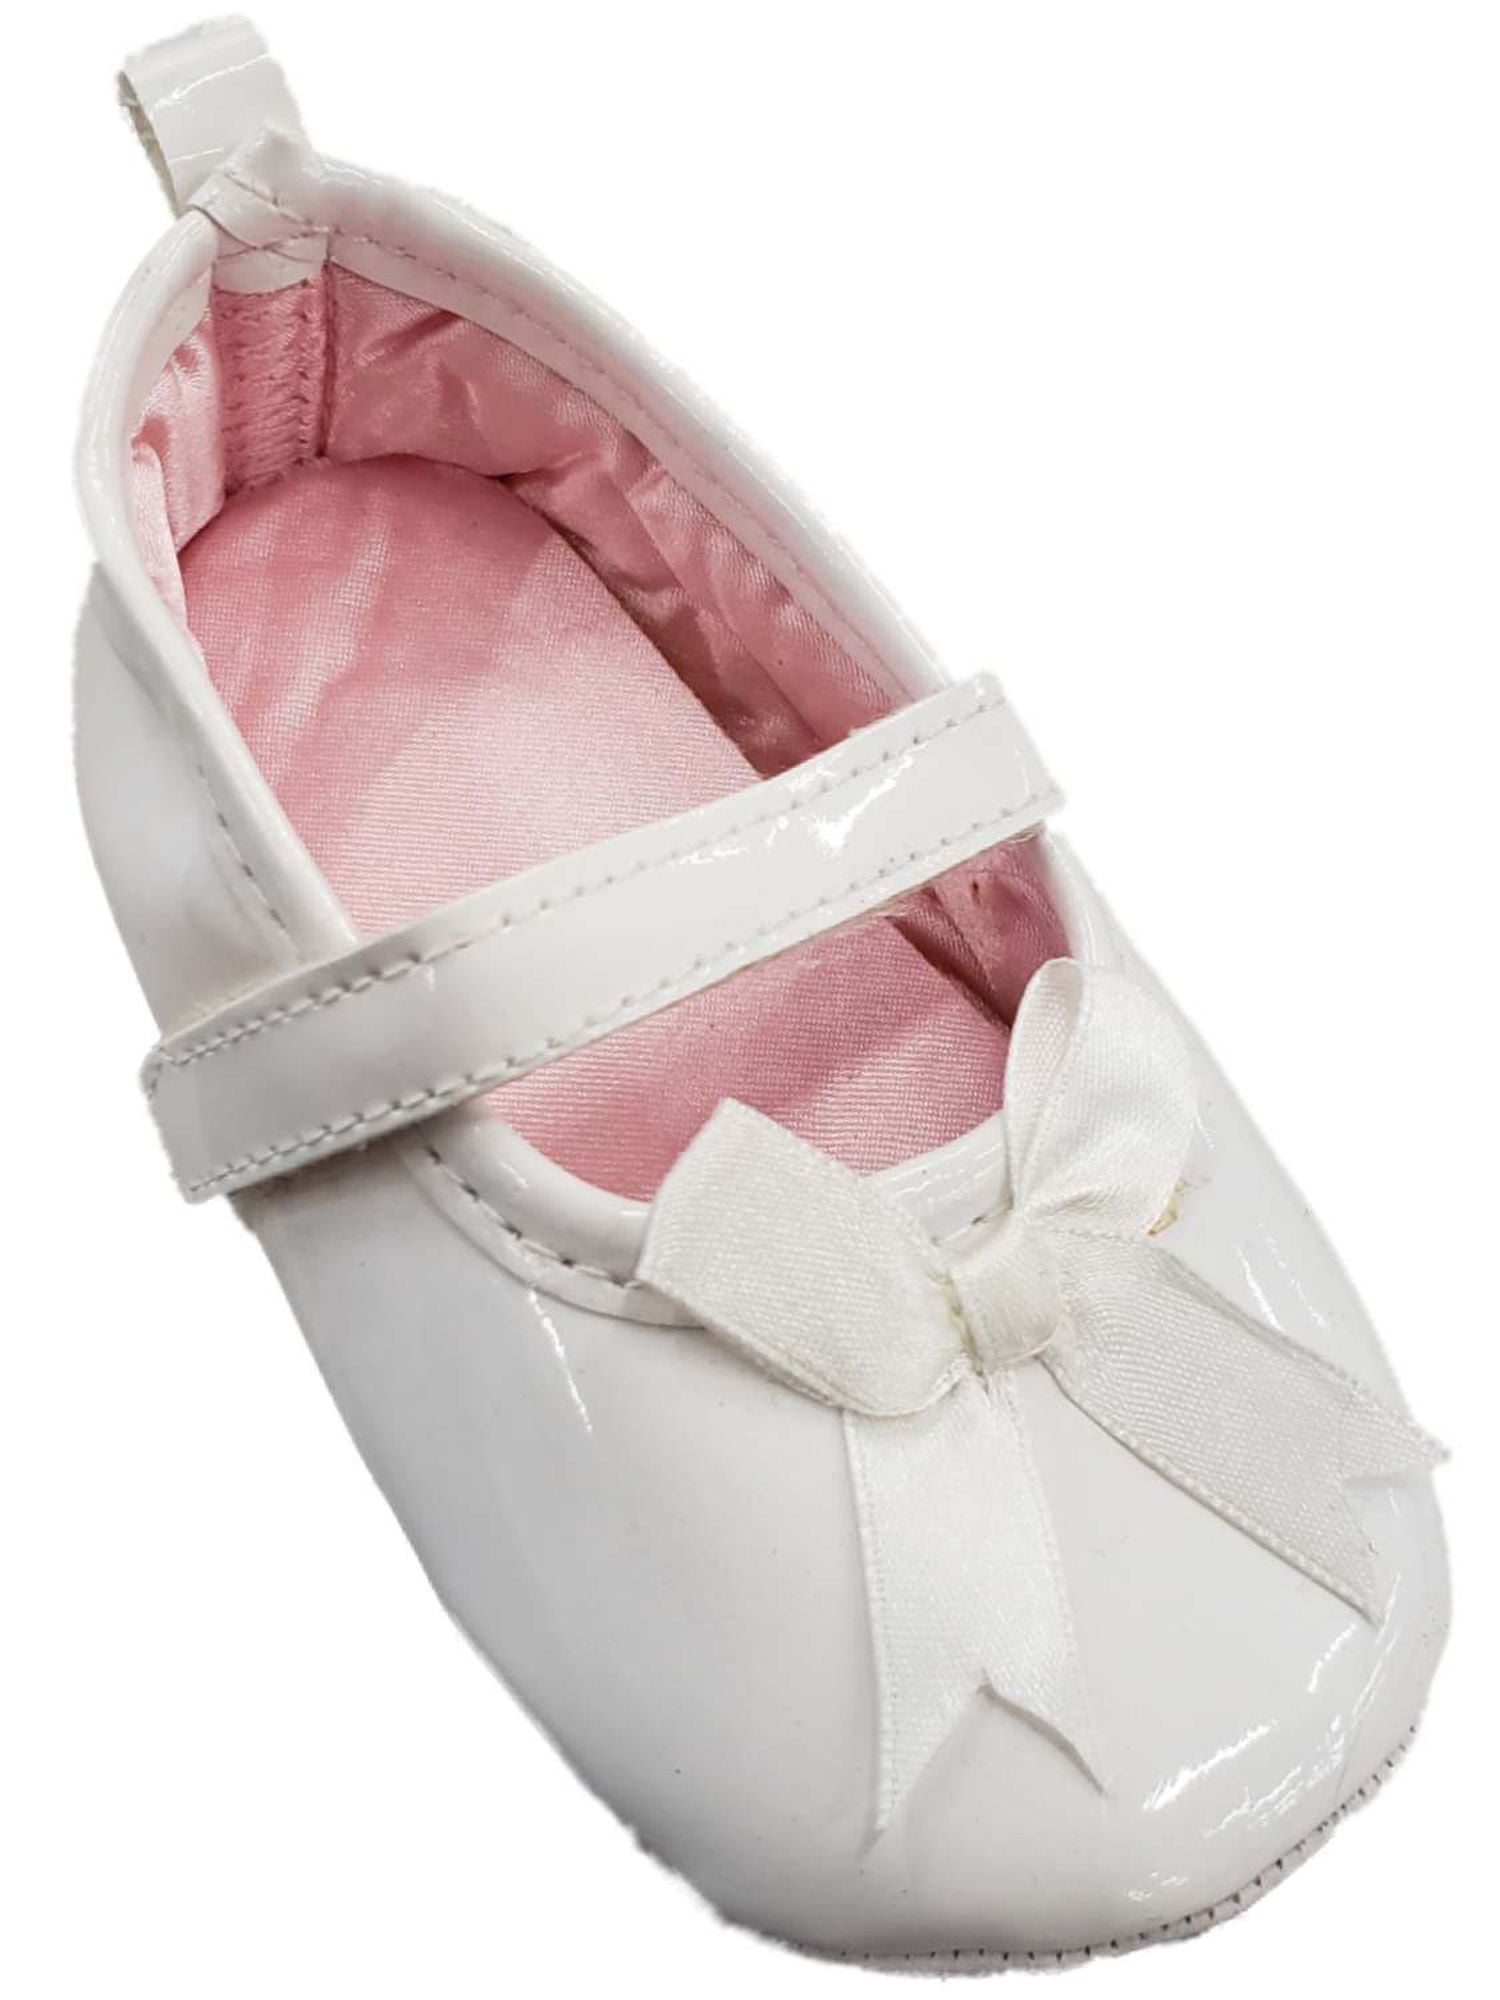 infant size 6 ballet shoes